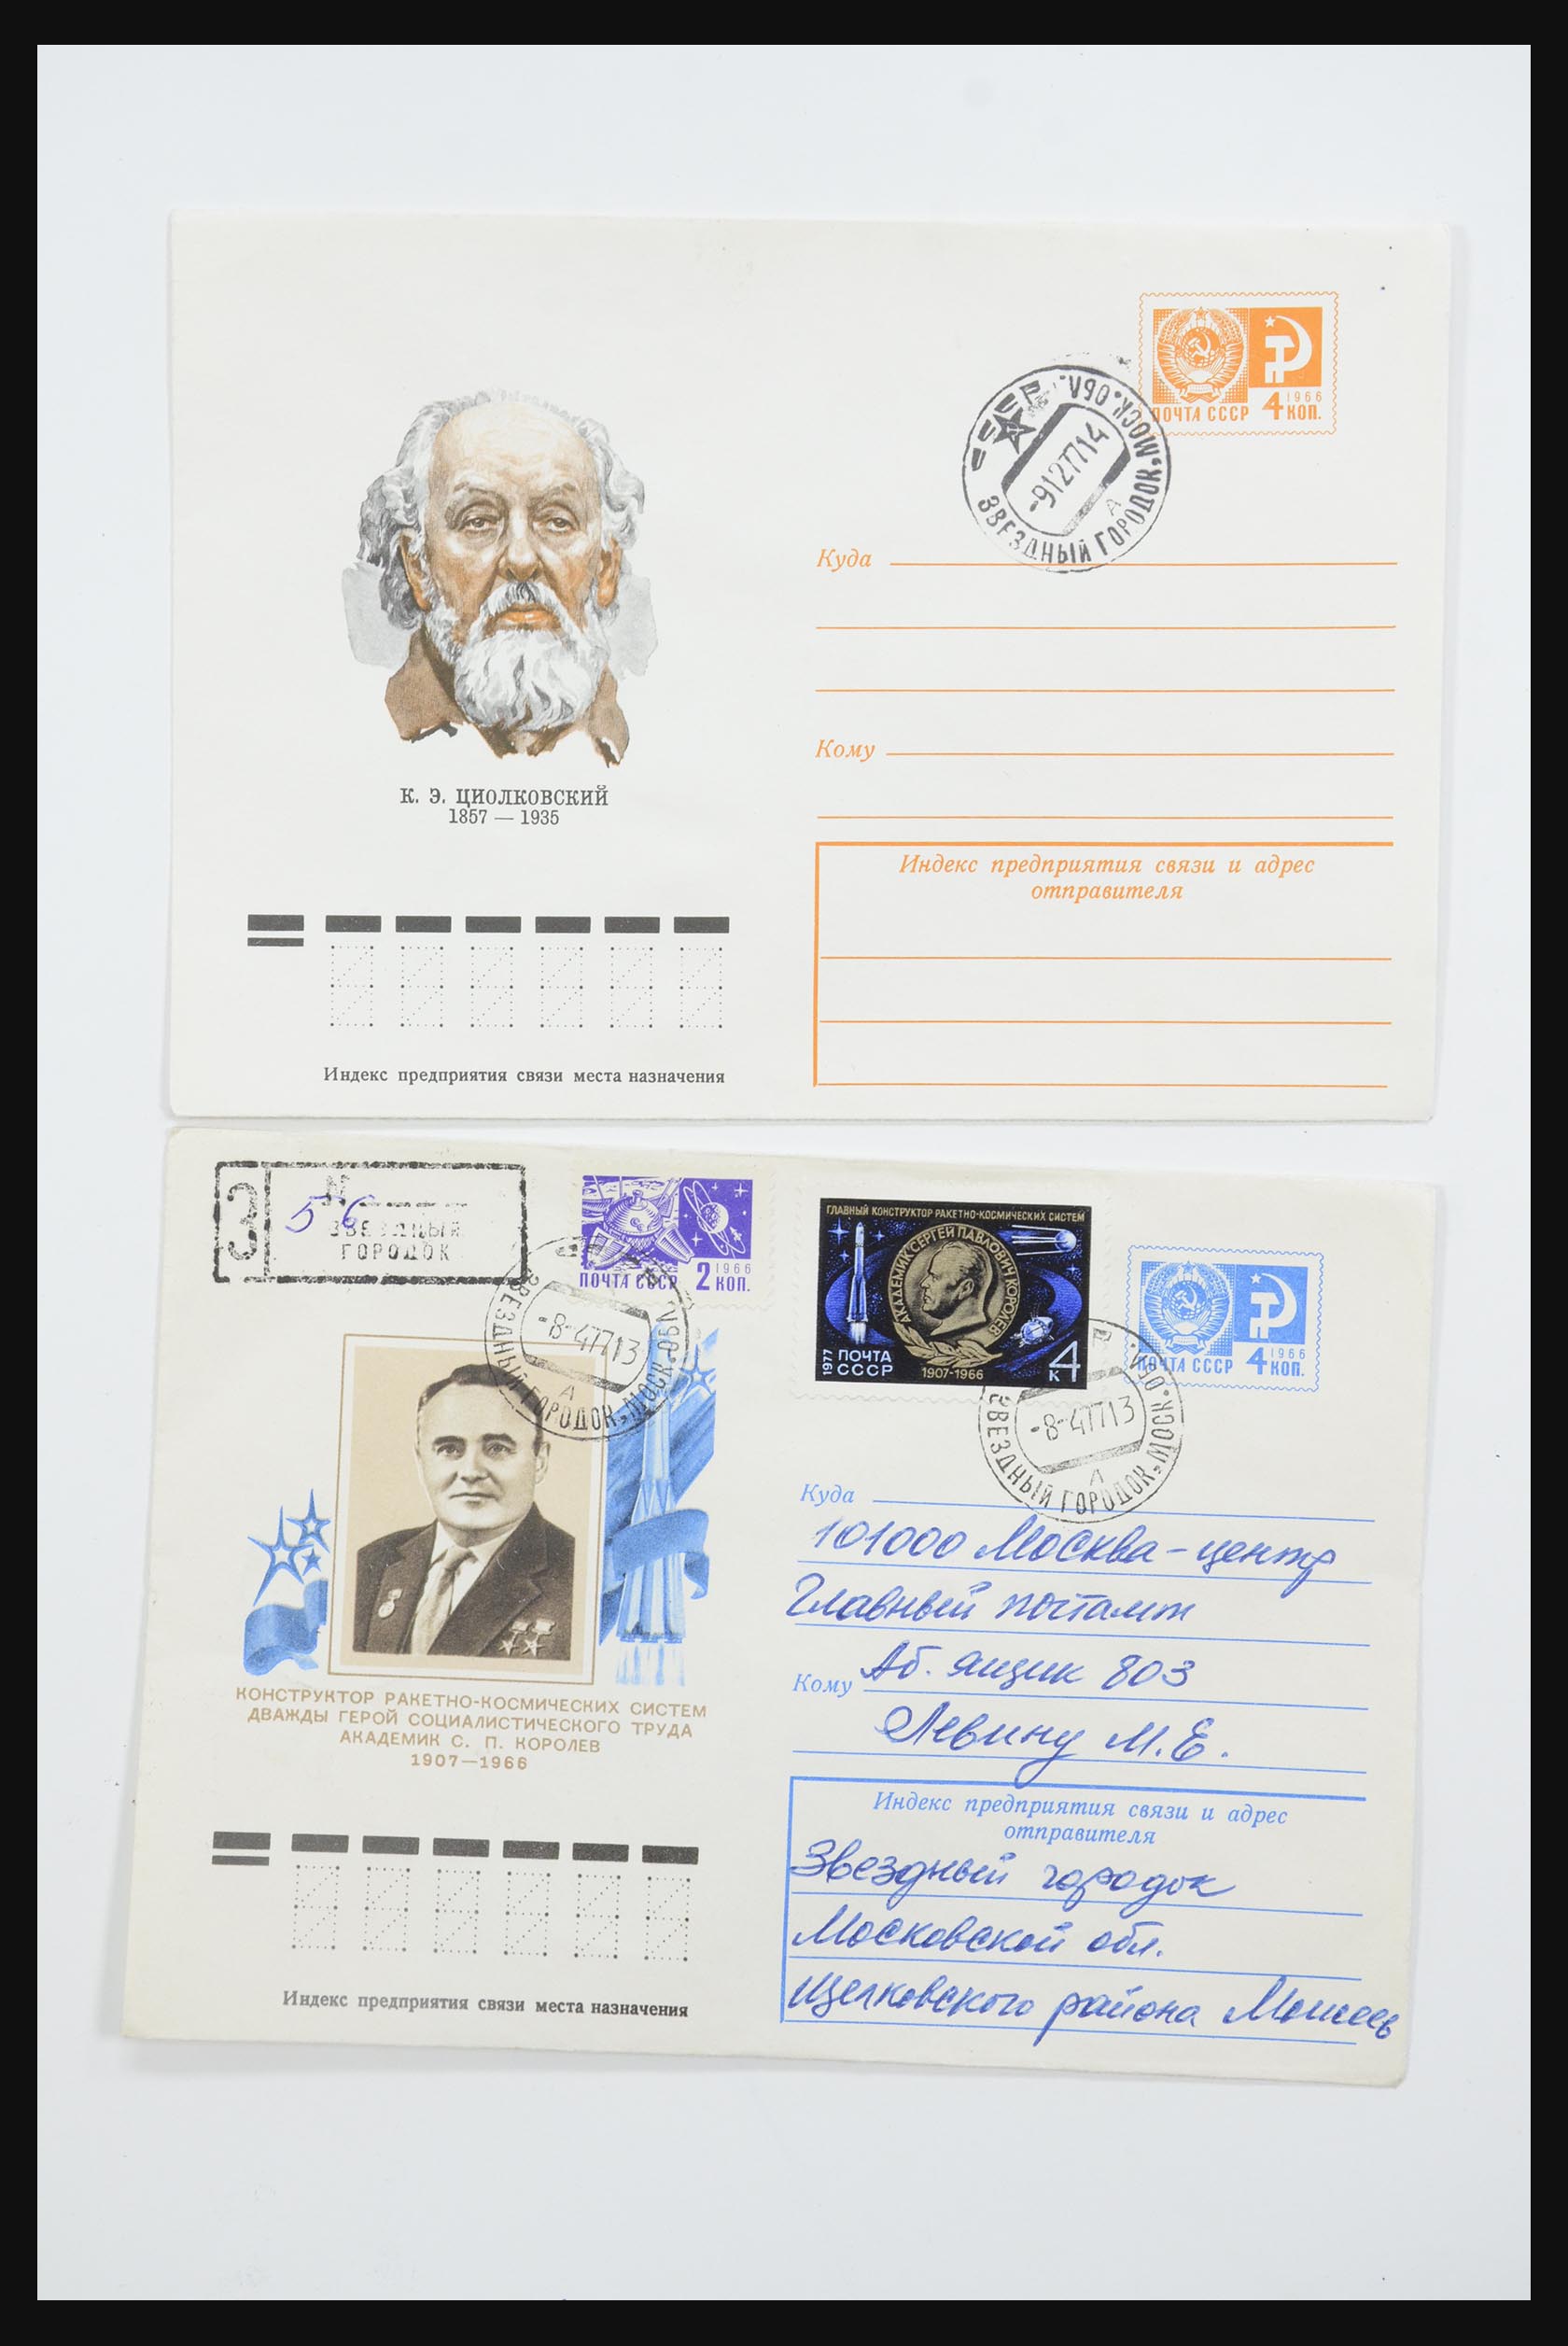 31605 0027 - 31605 Rusland postwaardestukken jaren 50-60.